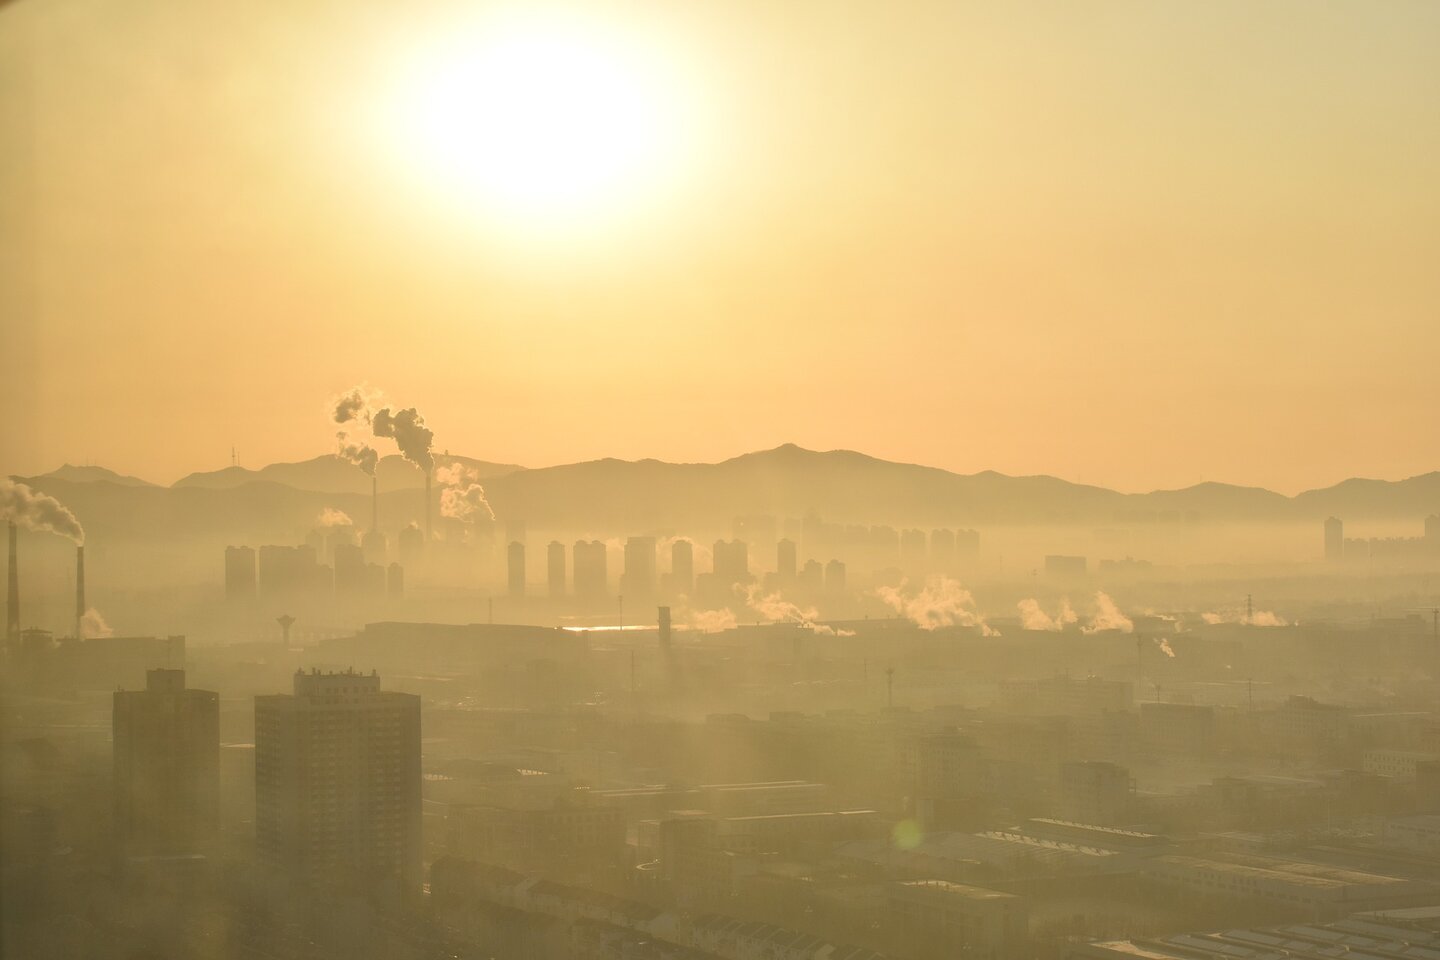 smog boven een stad door slechte luchtkwaliteit